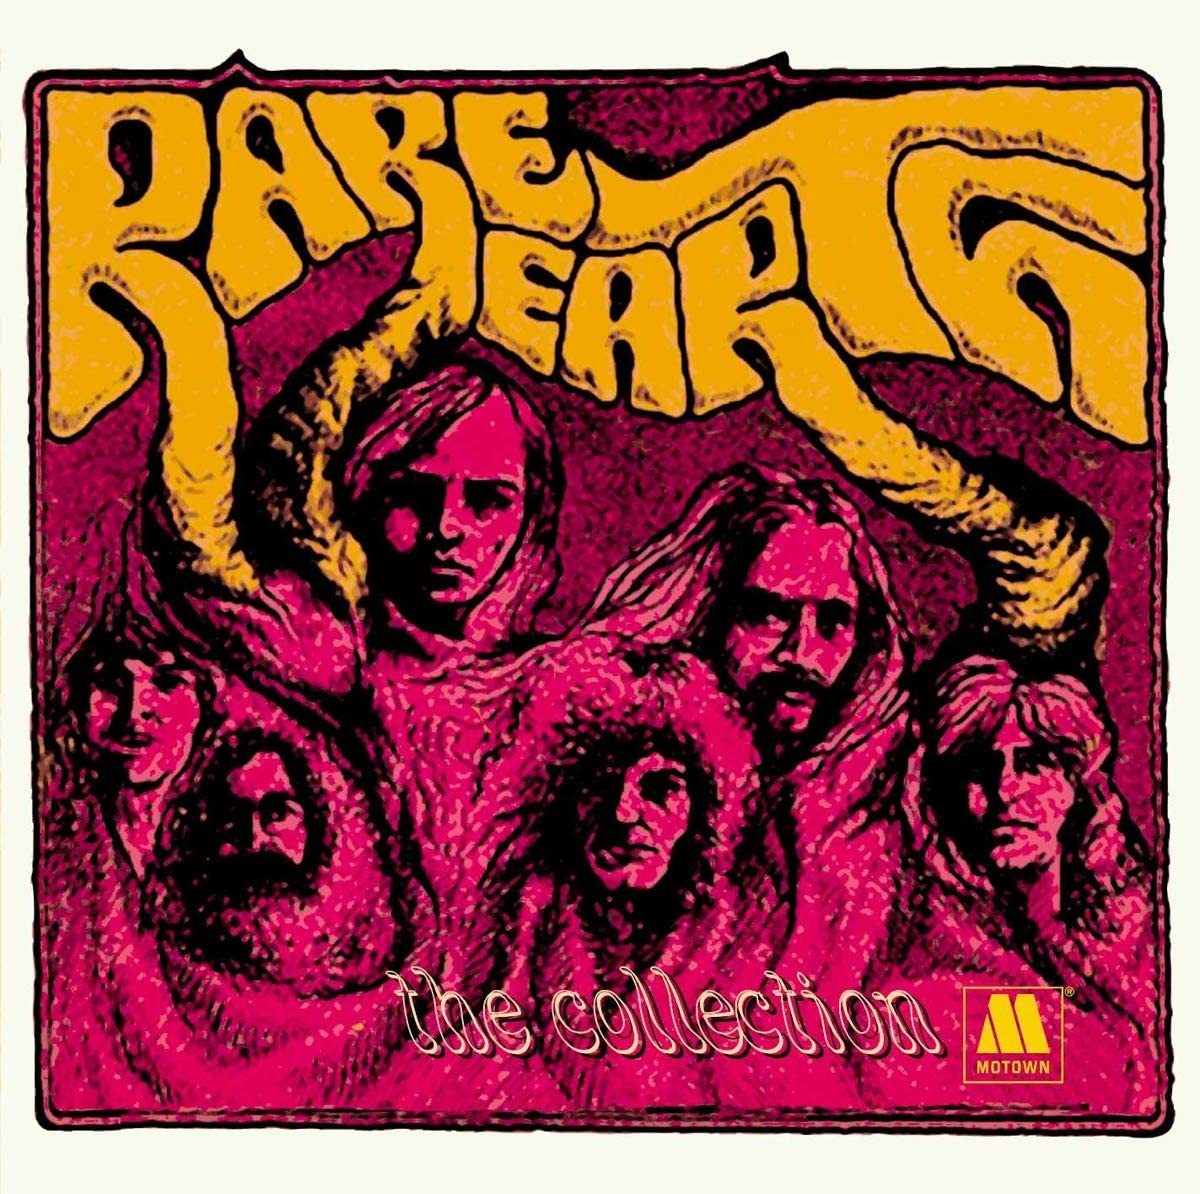 貴重廃盤 Rare Earth The Collection レア盤 R&B soul funk free soul garage の画像1